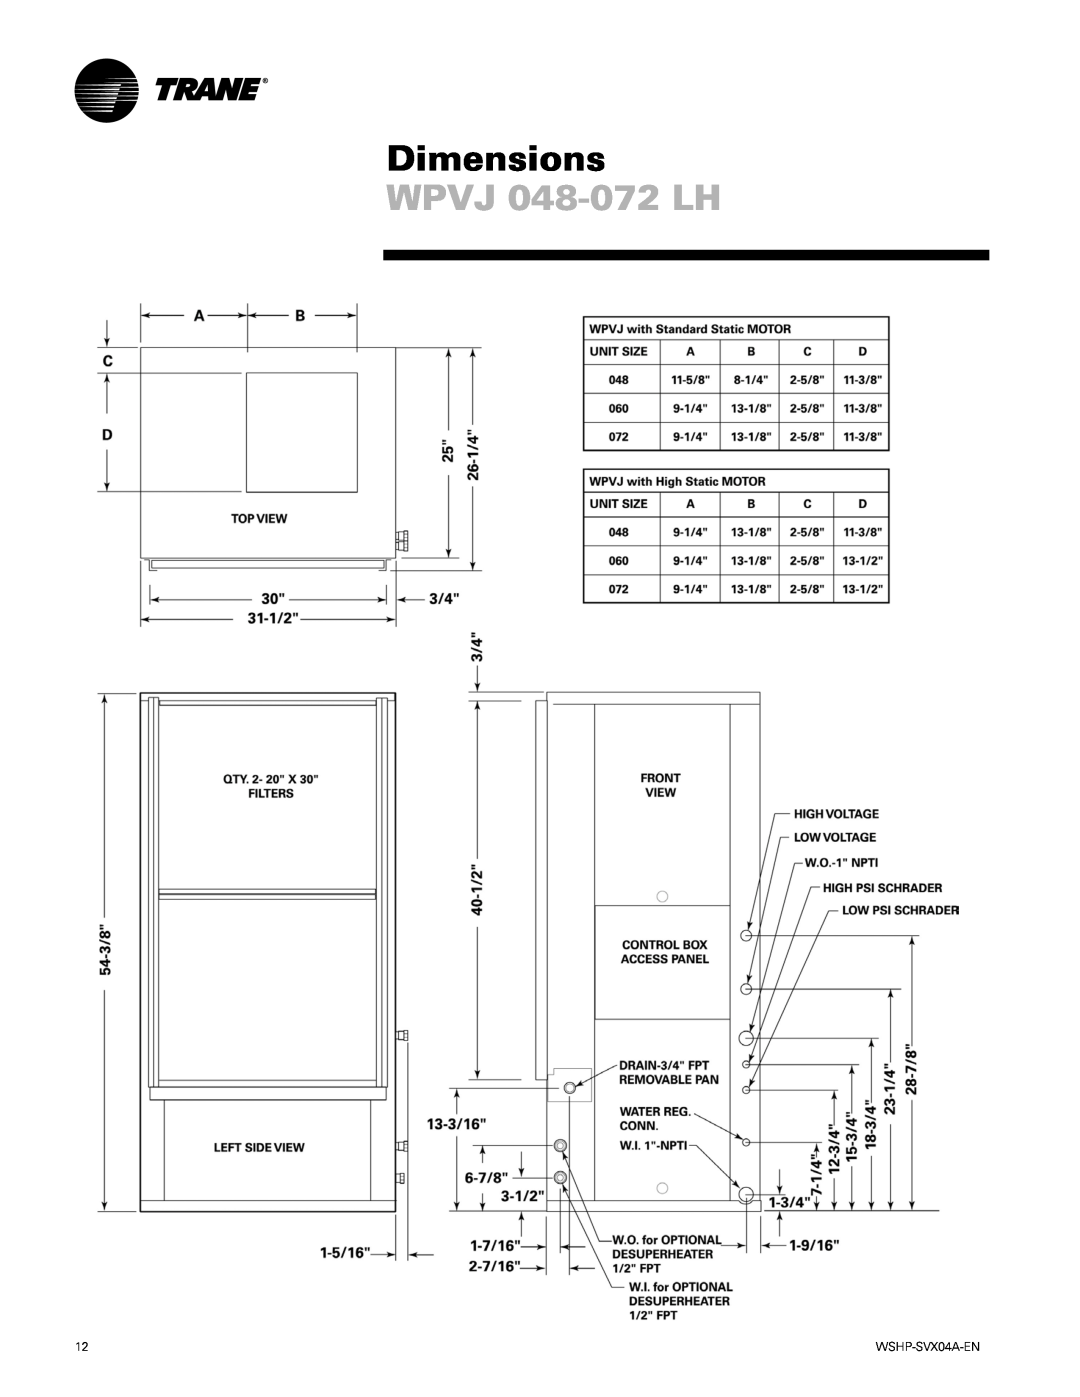 Trane WPHF manual WPVJ 048-072LH, Dimensions 